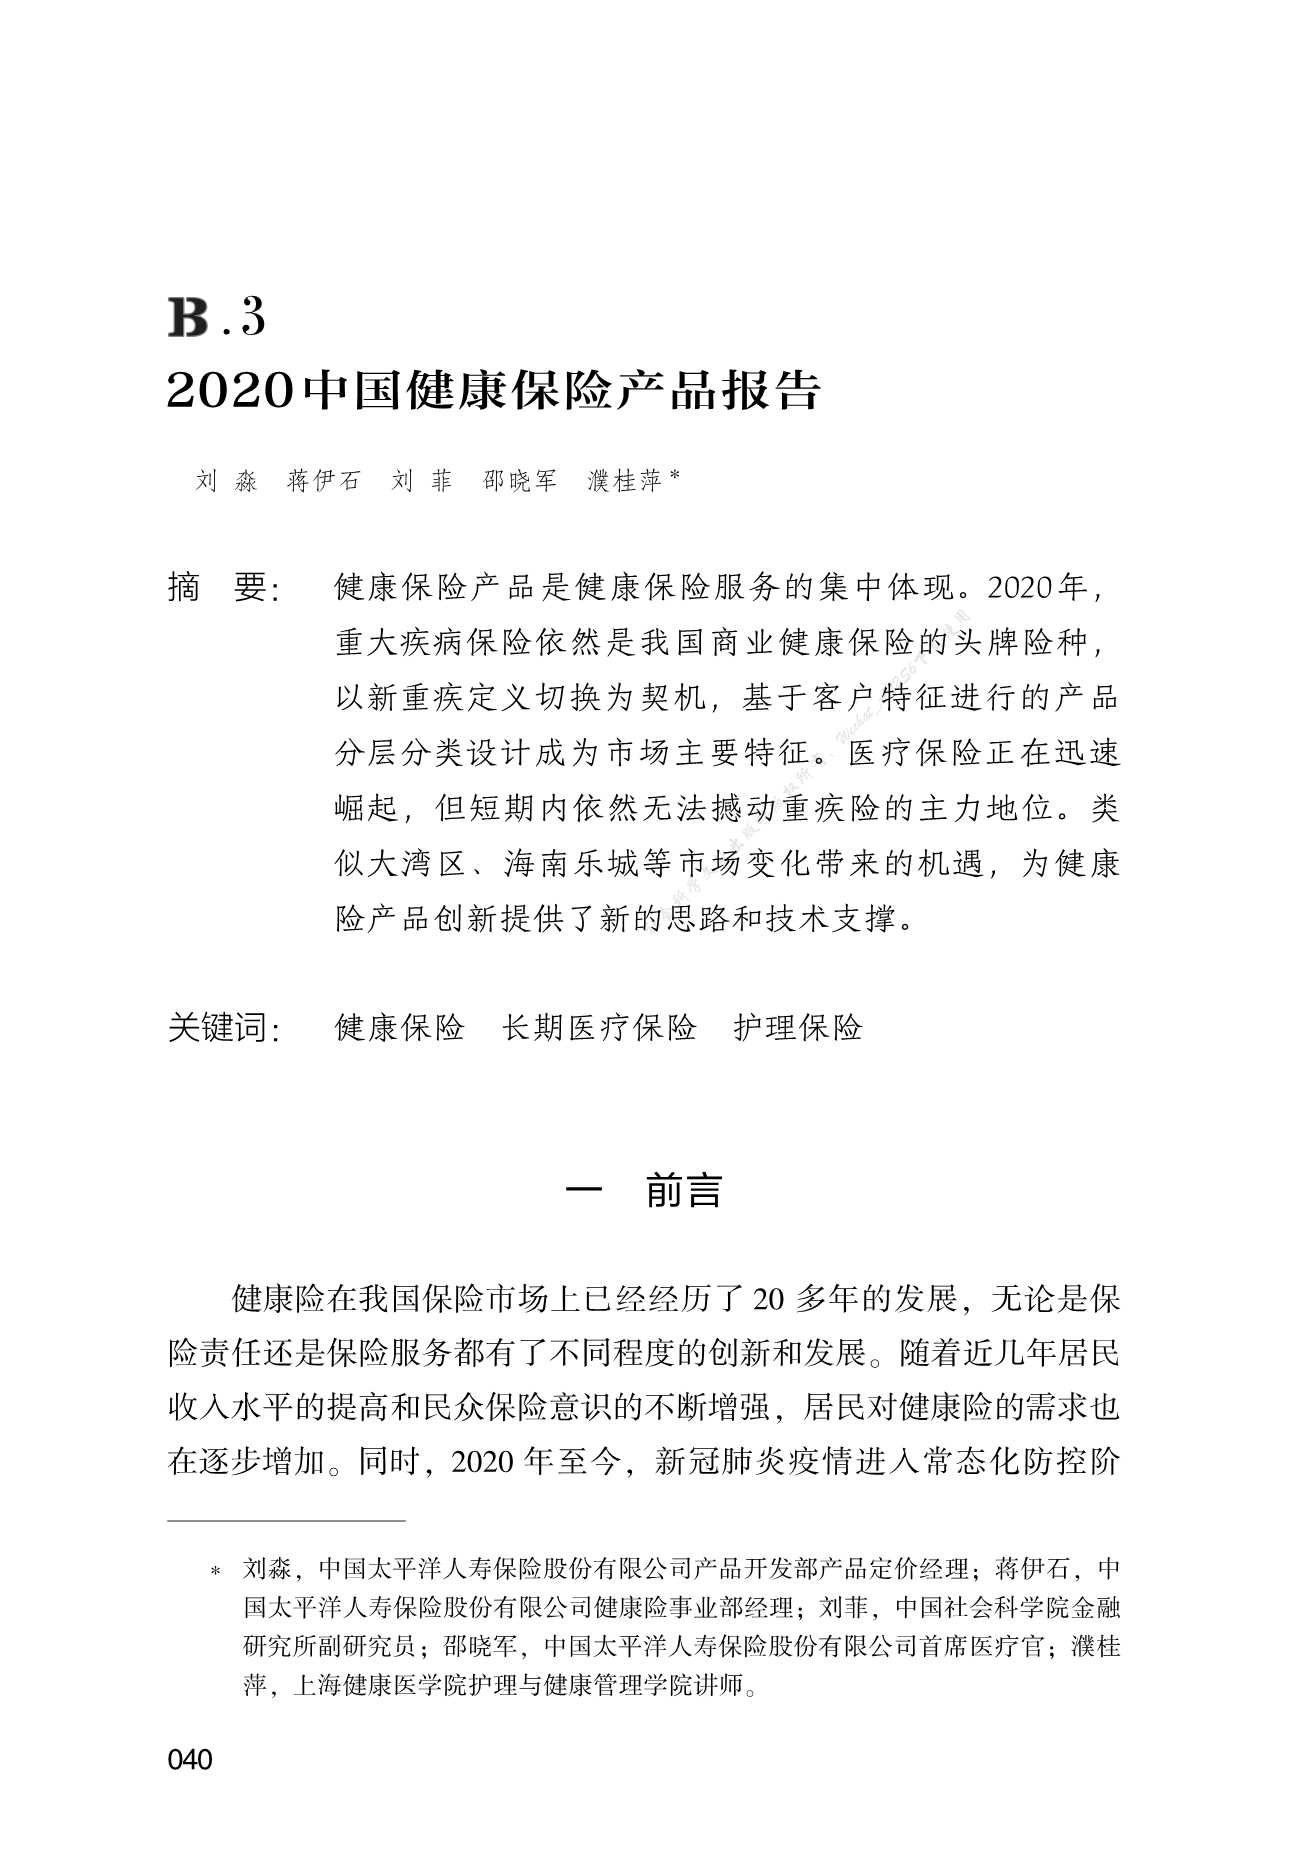 2020中国健康保险产品报告-2021.12-32页